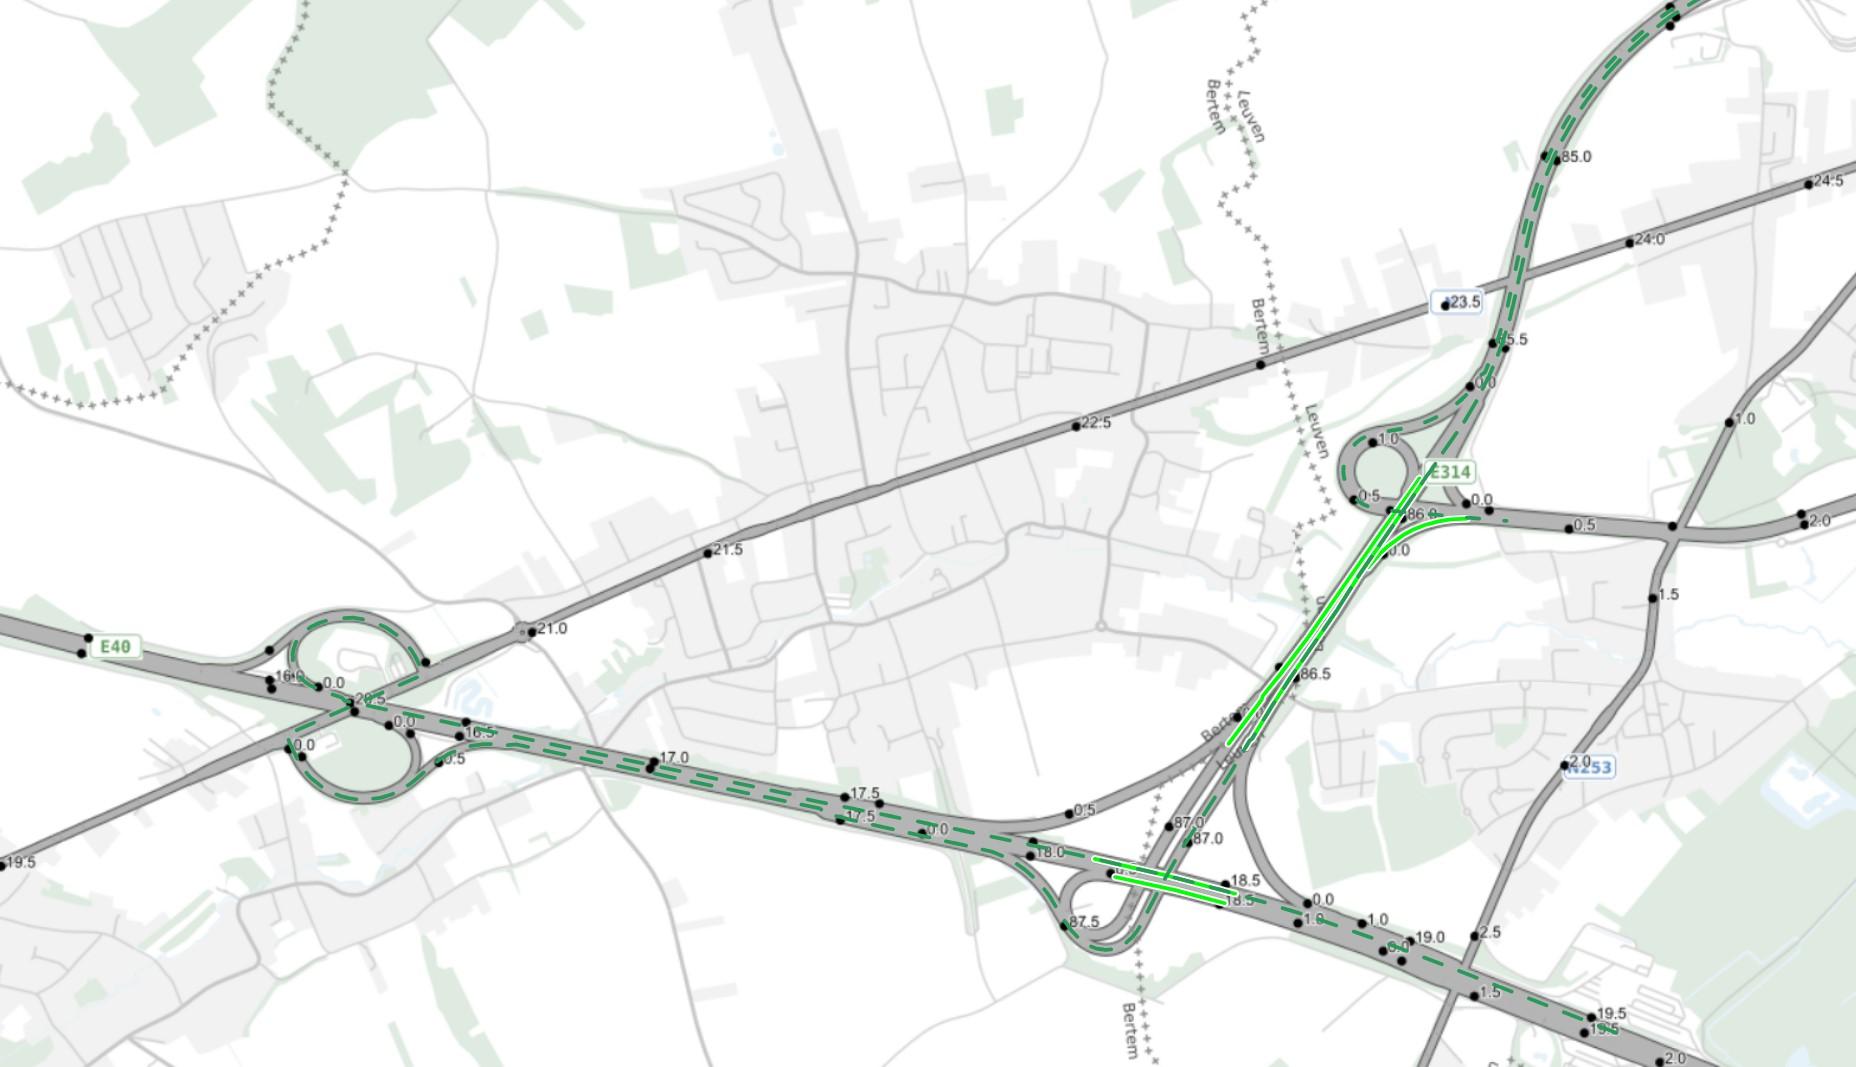 De volle groene lijnen op de kaart geven de verschillende werfzones weer. De groene stippellijn telkens de omleiding naar het volgende complex.